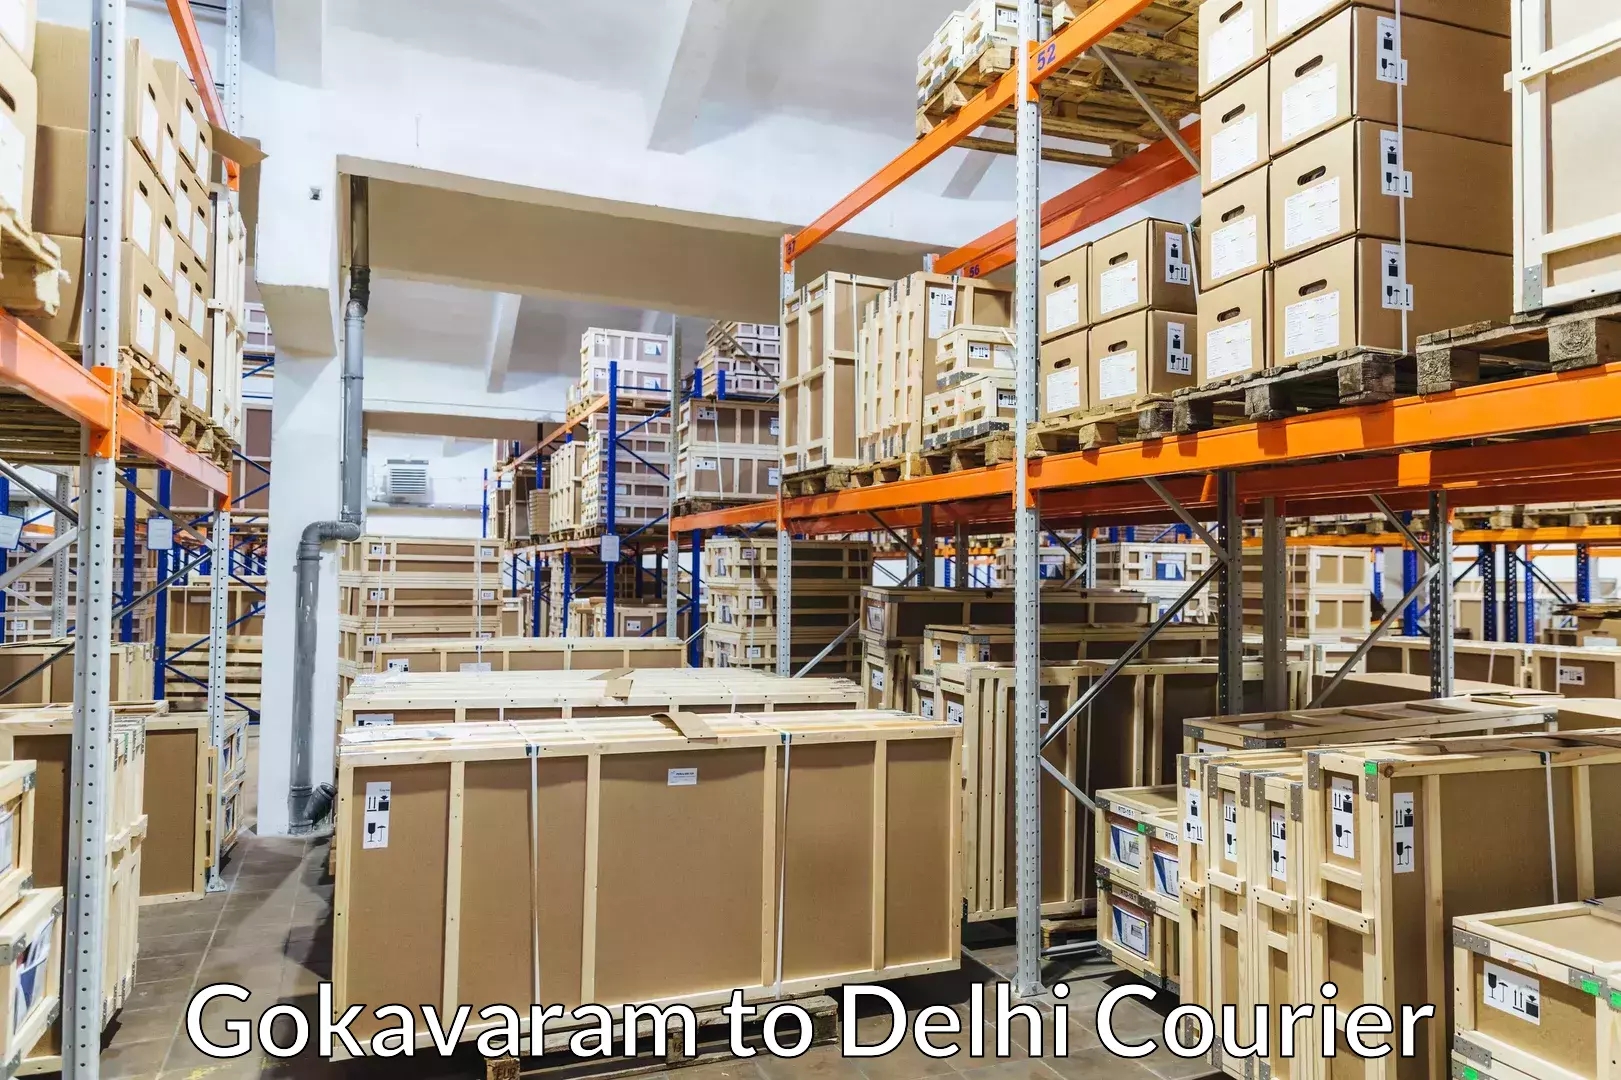 Professional moving company Gokavaram to Kalkaji